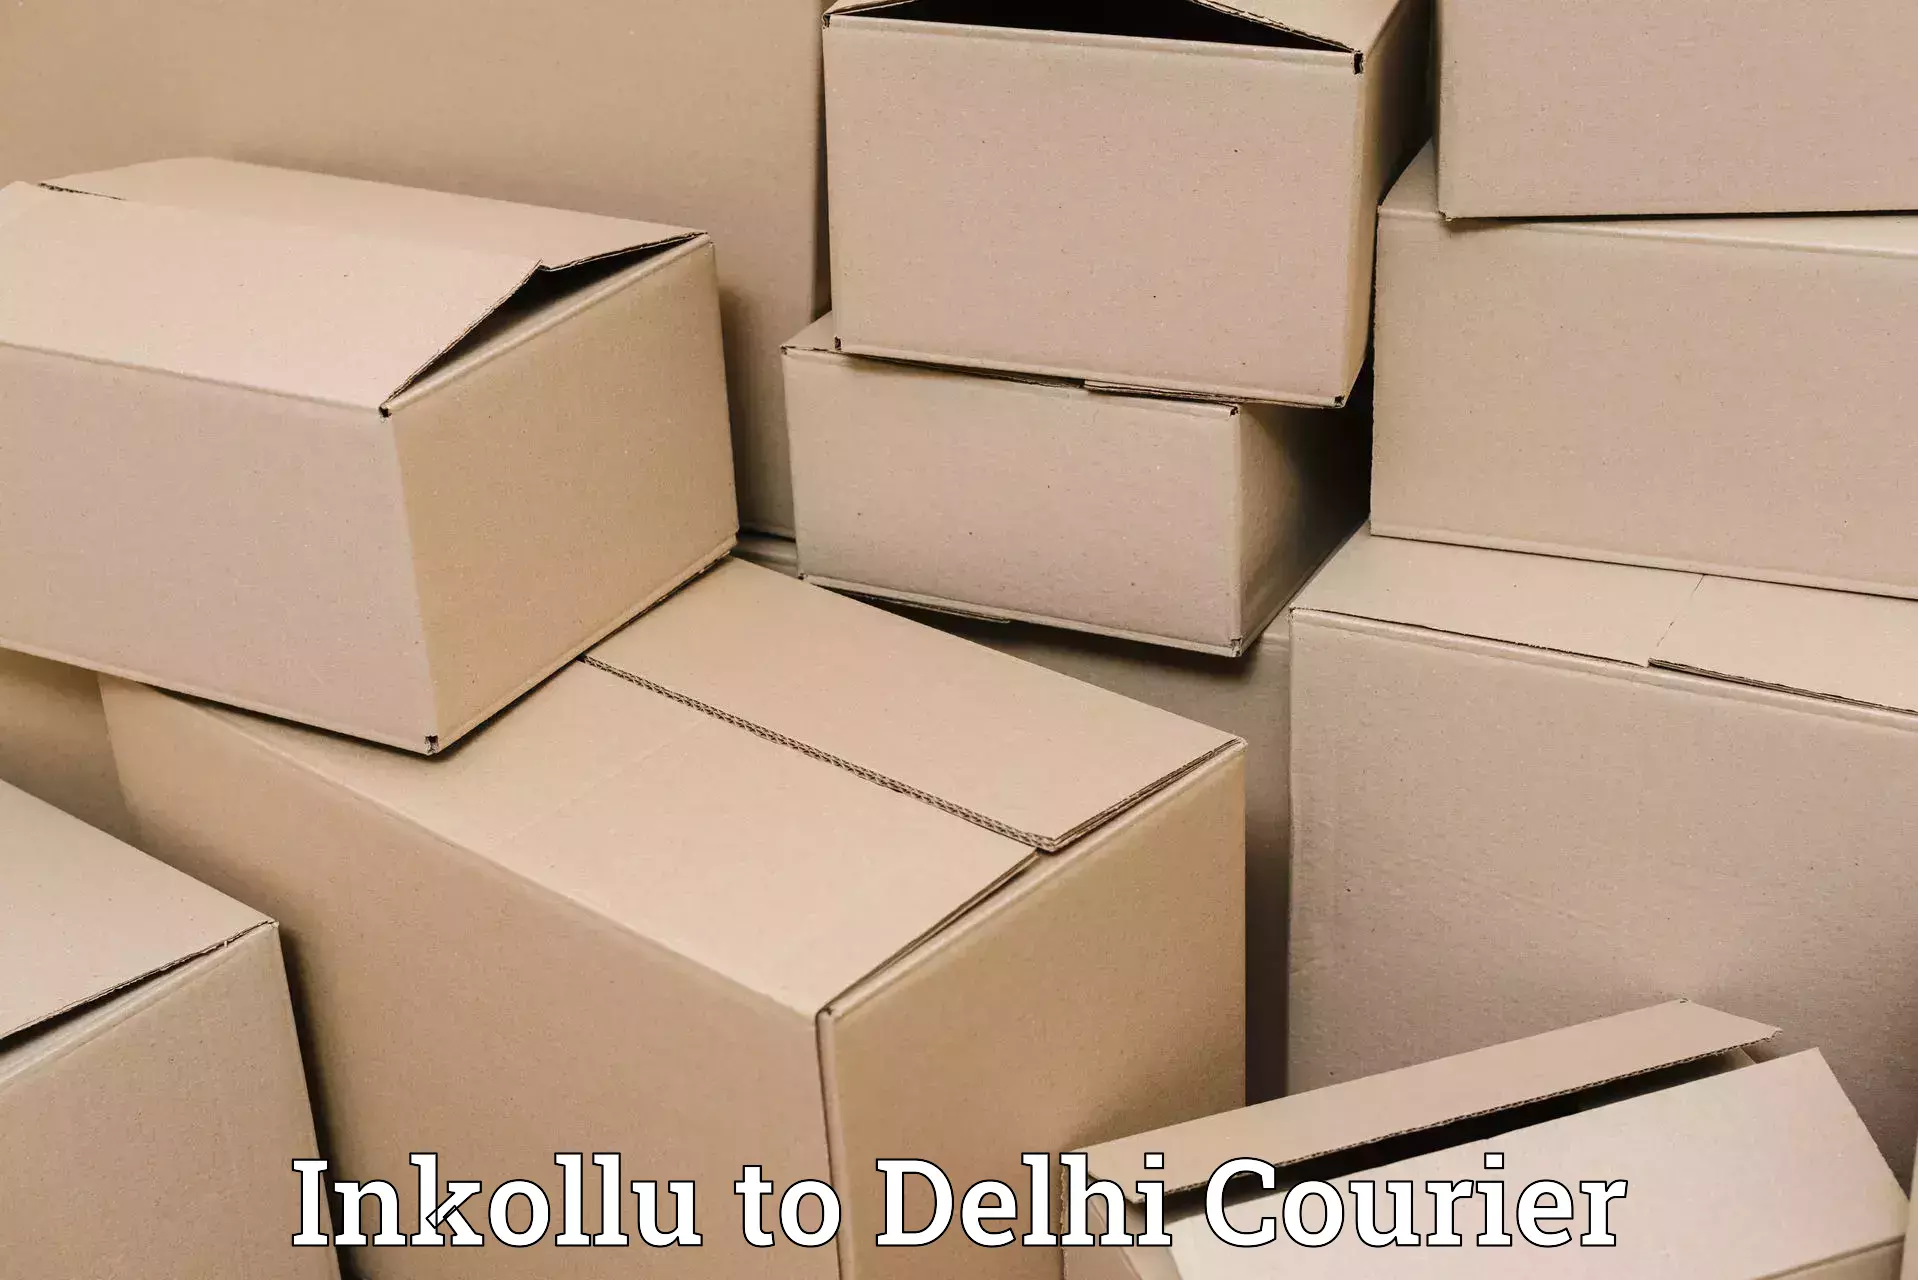 Door-to-door freight service Inkollu to East Delhi